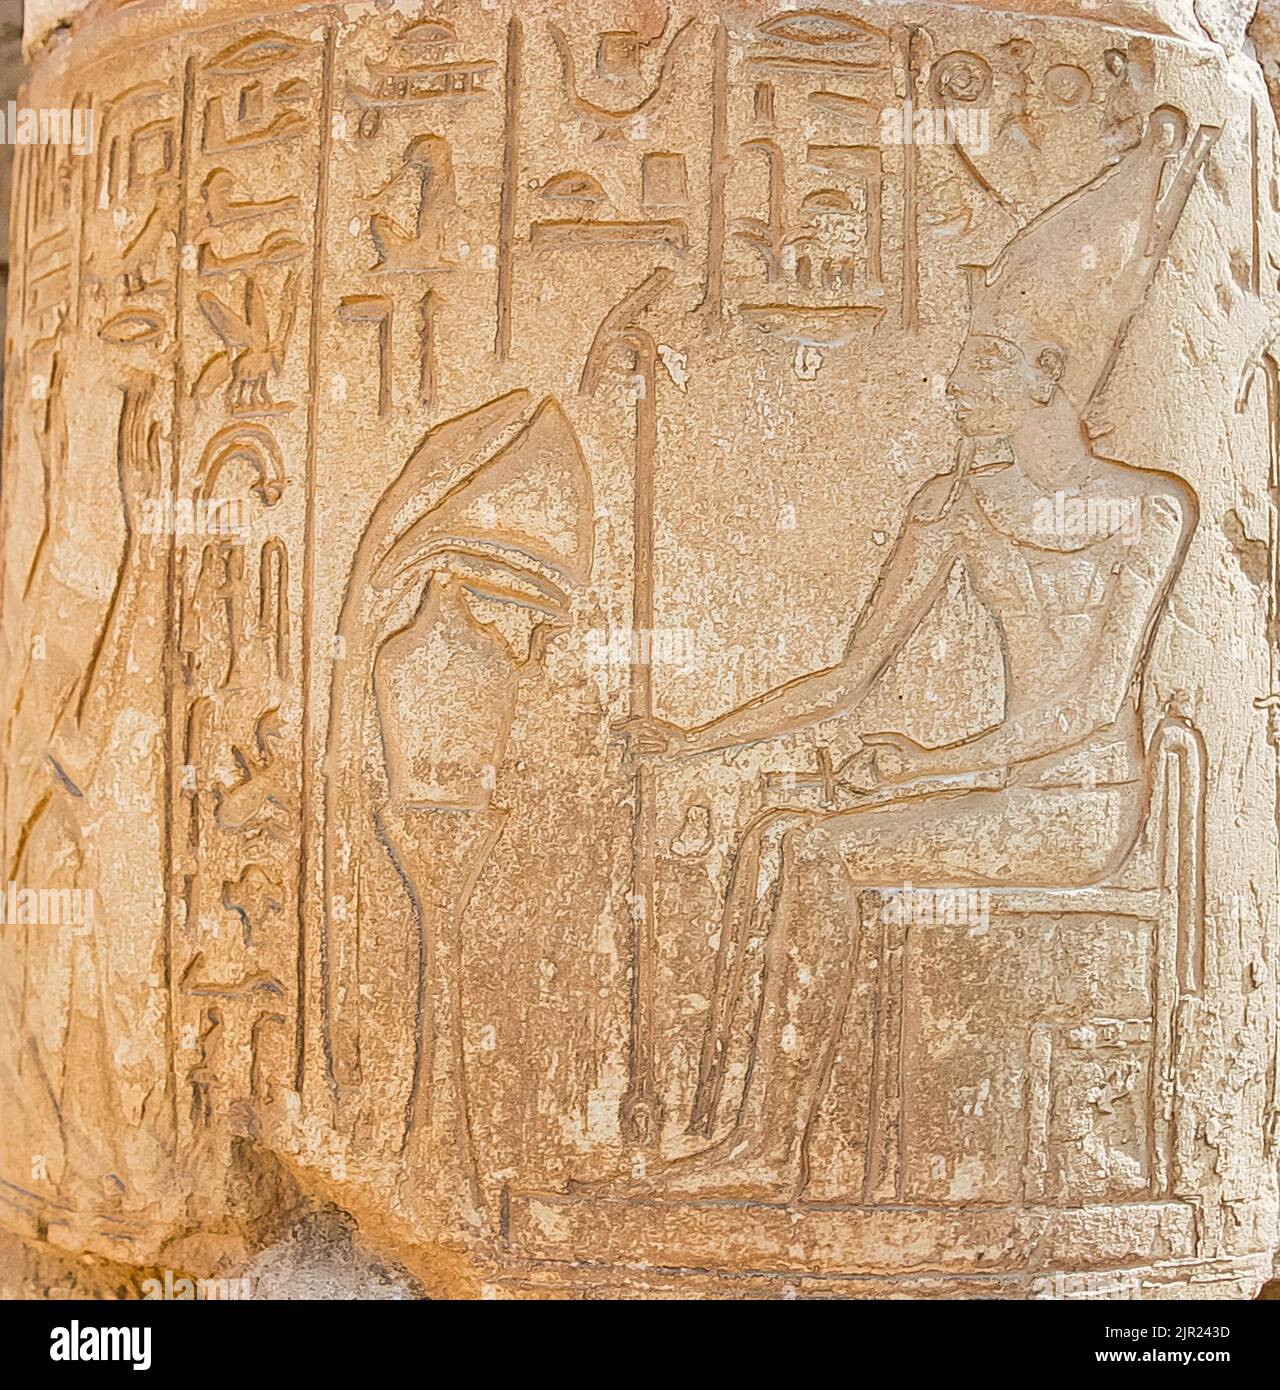 Egitto, Saqqara, tomba di Horemheb, rilievi su colonne nella seconda corte: Horemheb (a sinistra) che prega Atum. Foto Stock